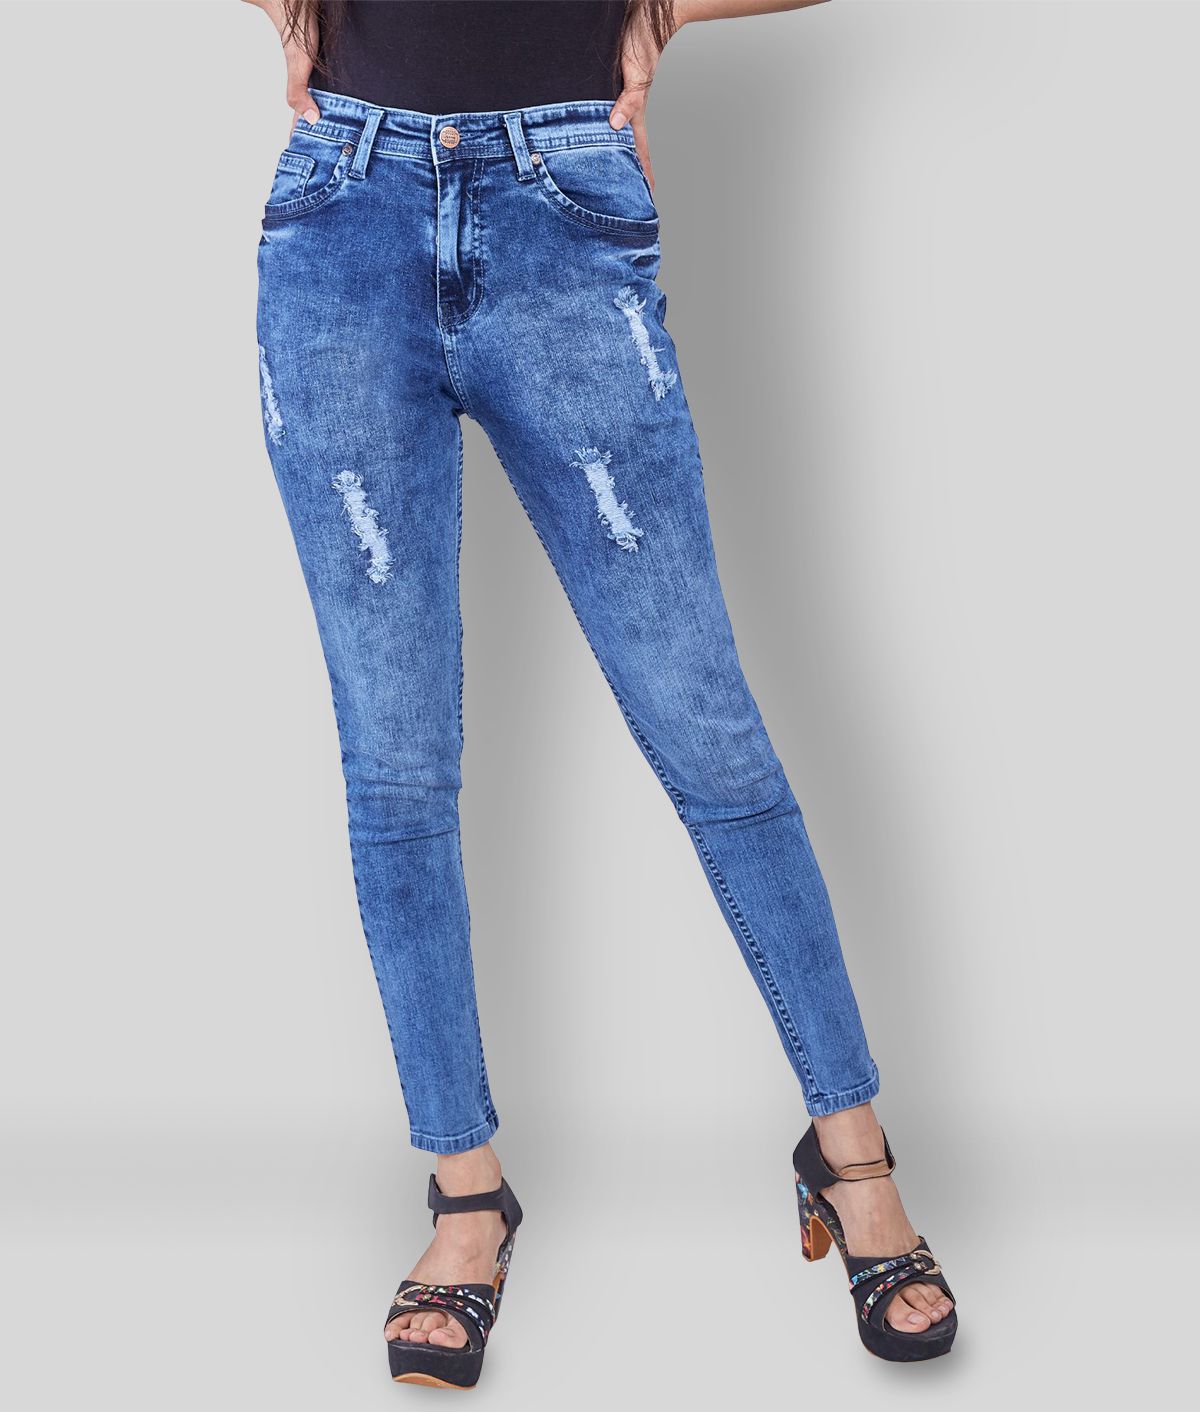 Rea-lize - Blue Cotton Blend Women's Jeans ( Pack of 1 )